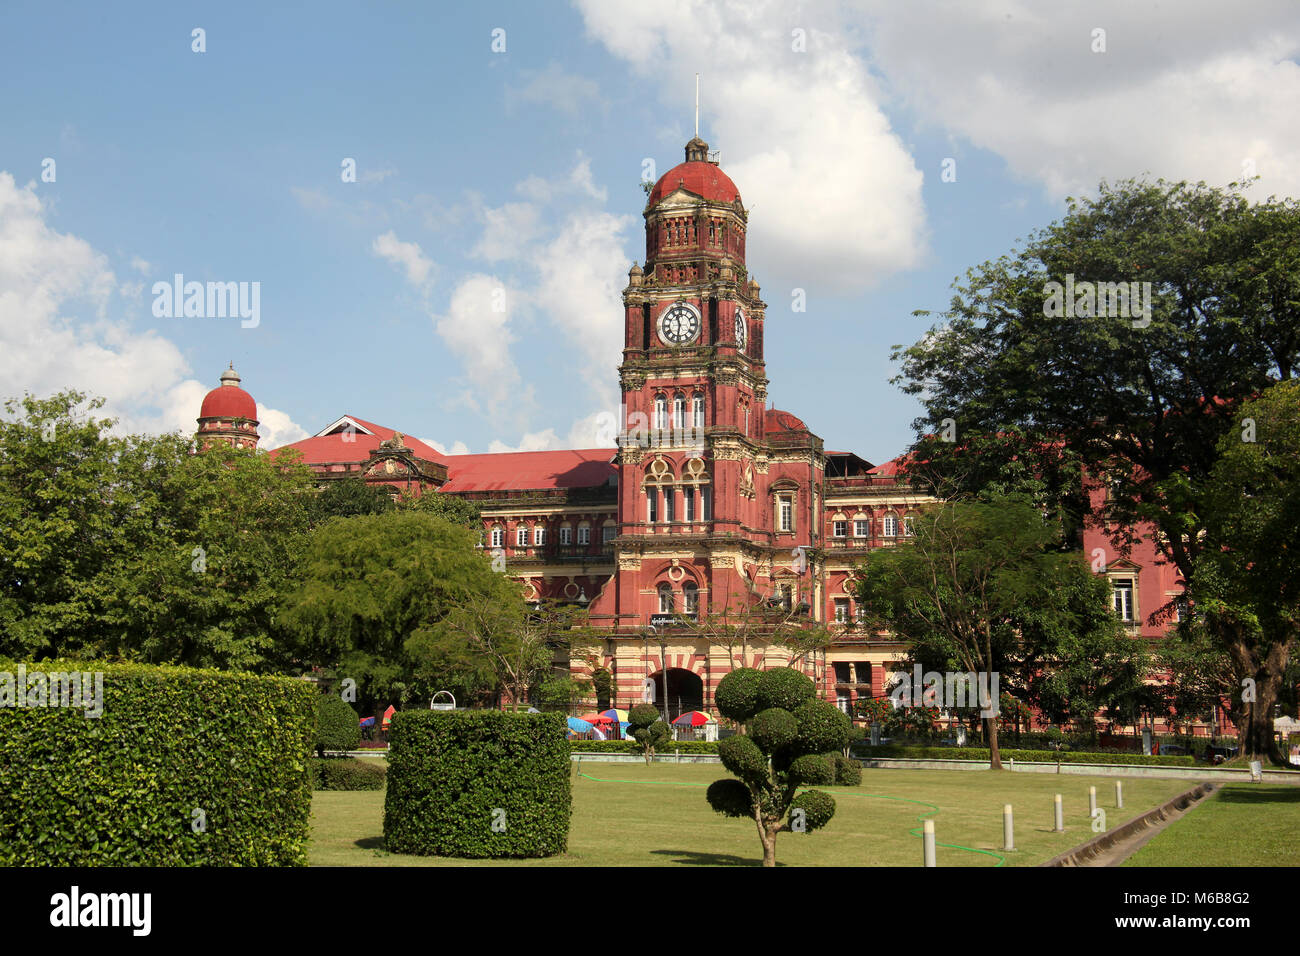 Colonial ancien bâtiment de cour élevée en brique rouge avec sa tour de l'horloge, Yangon, Myanmar. Banque D'Images